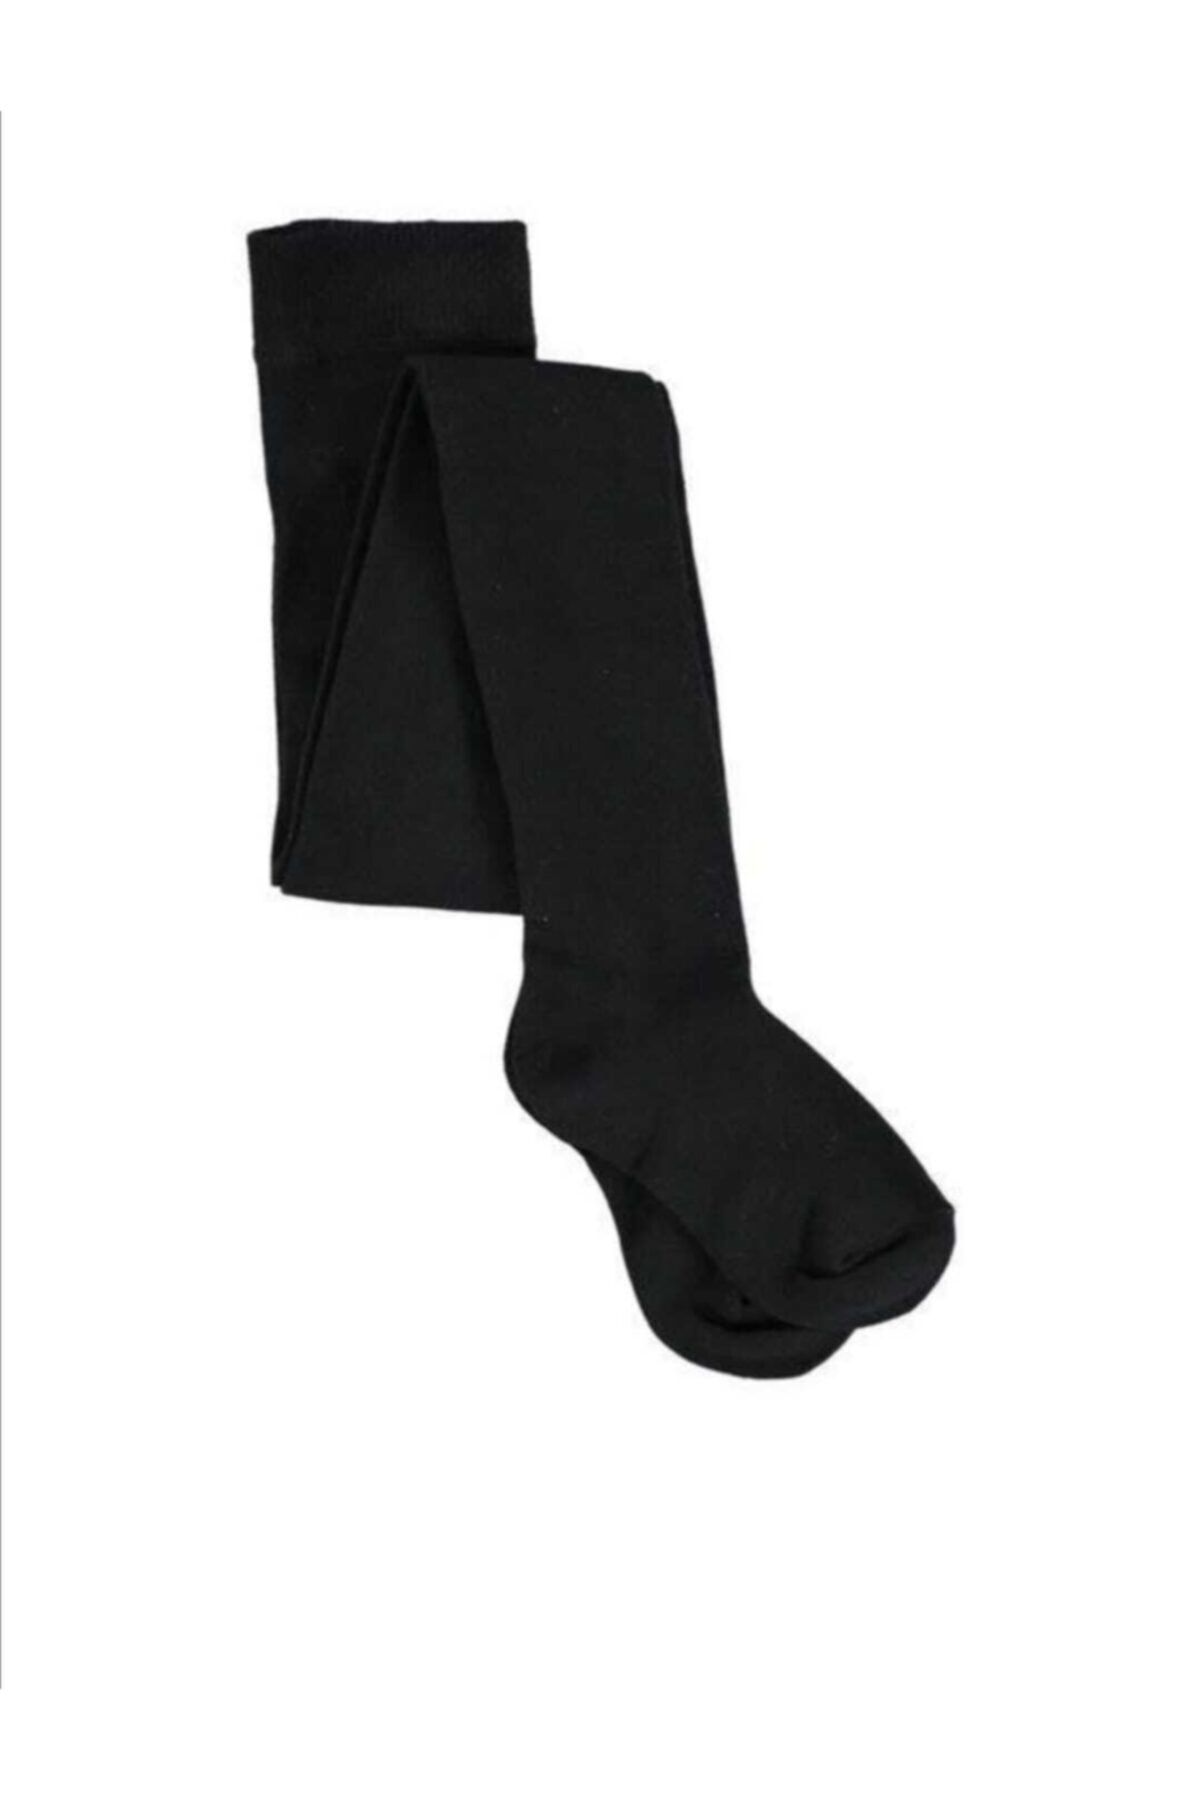 İpek Class Kız Çocuk Pamuklu Külotlu Çorap 3'lü Siyah